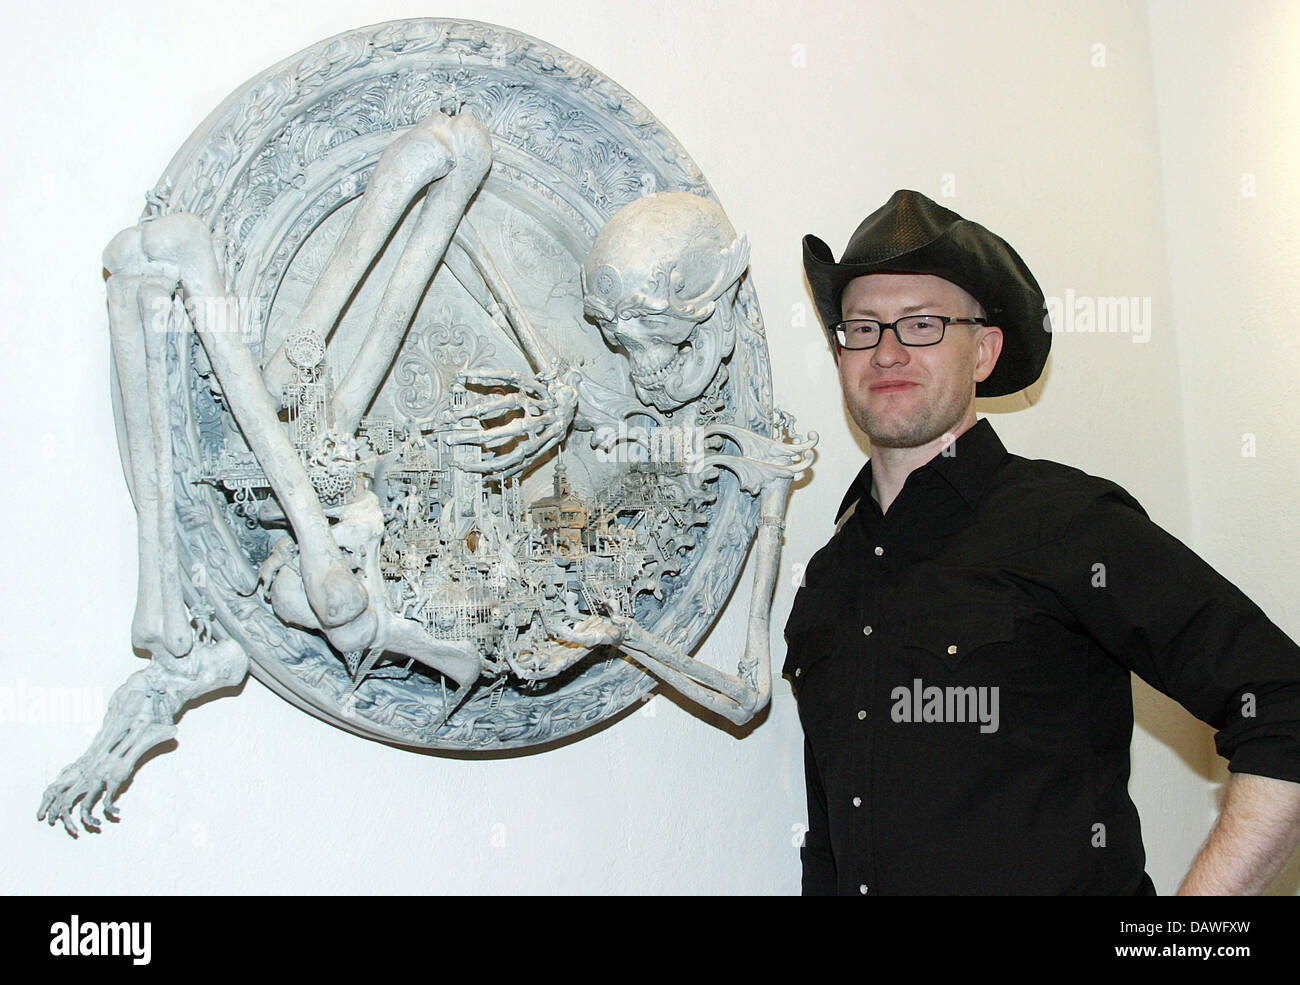 US-Künstler Kris Kuksi abgebildet mit Oine seiner Werke in der Strychnin Gallery in Berlin, Deutschland, 13. April 2007. Er präsentiert seine Werke im Preis von 2.500 bis 5.500 Euro unter dem Motto "Lost Worlds". Foto: Xamax Stockfoto